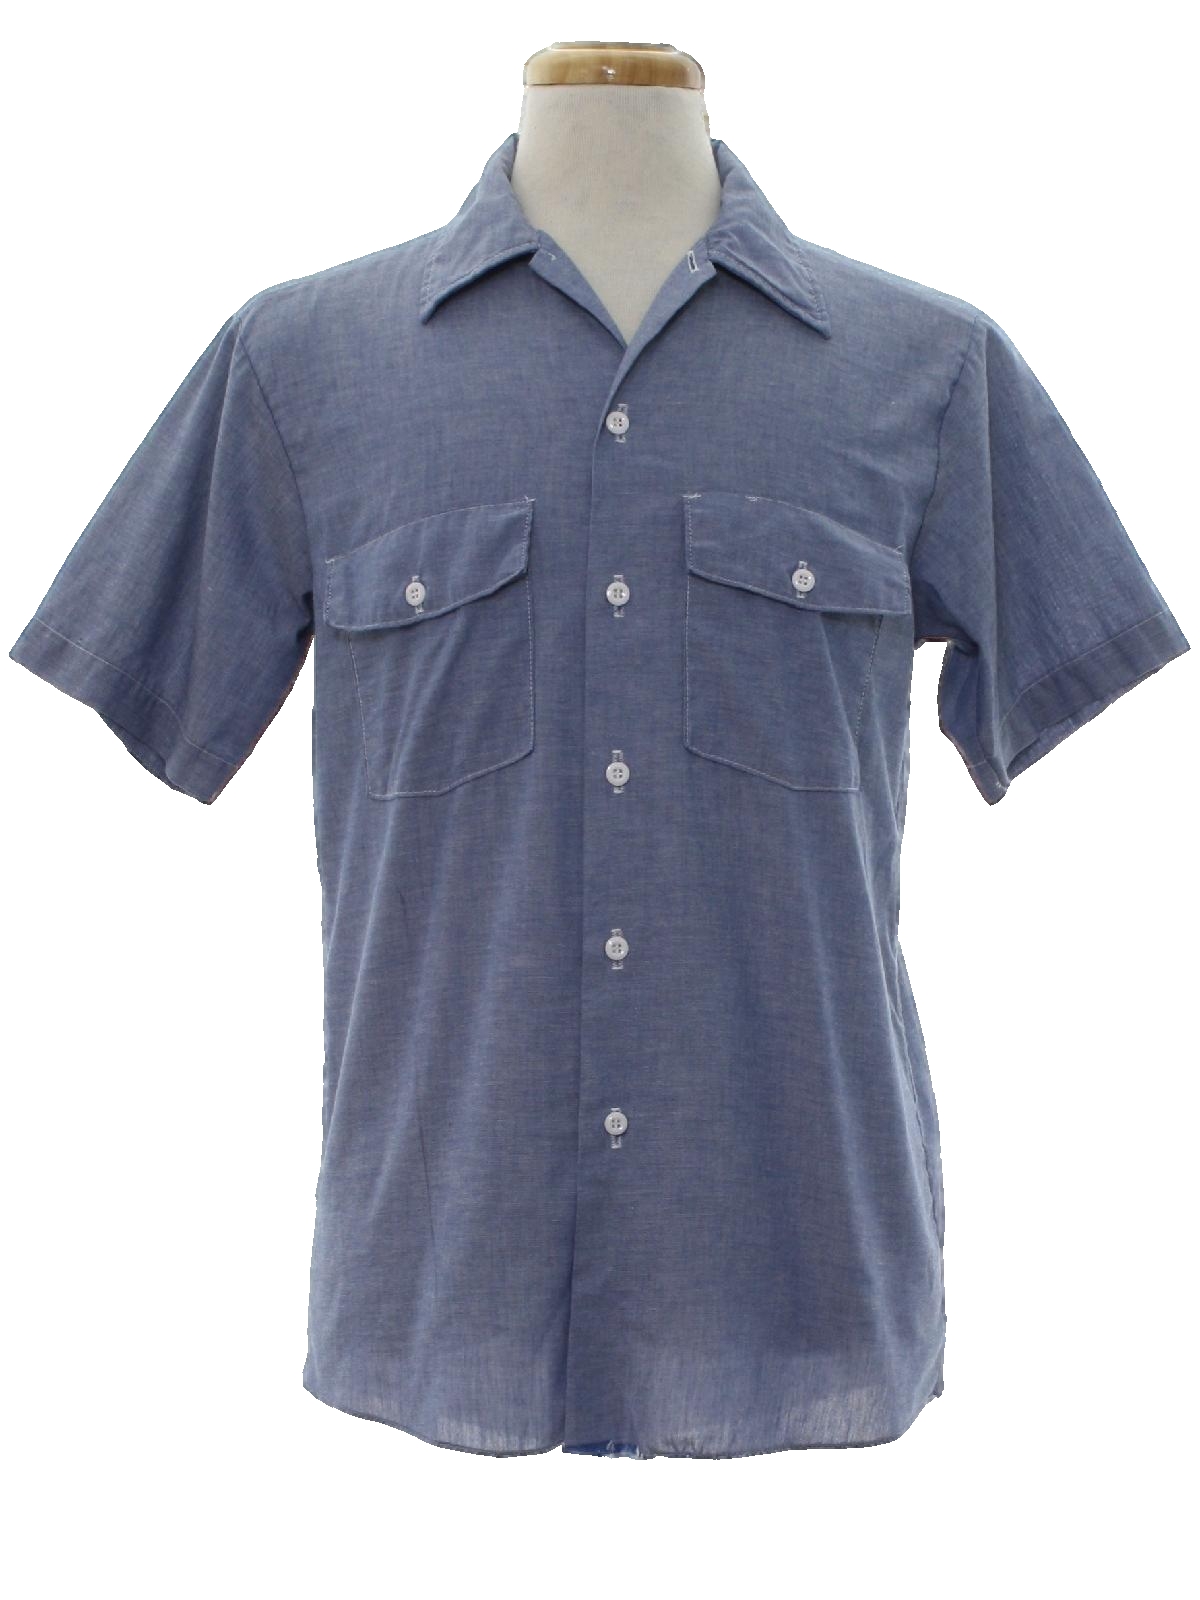 Seventies Dickies Shirt: Late 70s or Early 80s -Dickies- Mens hazy blue ...